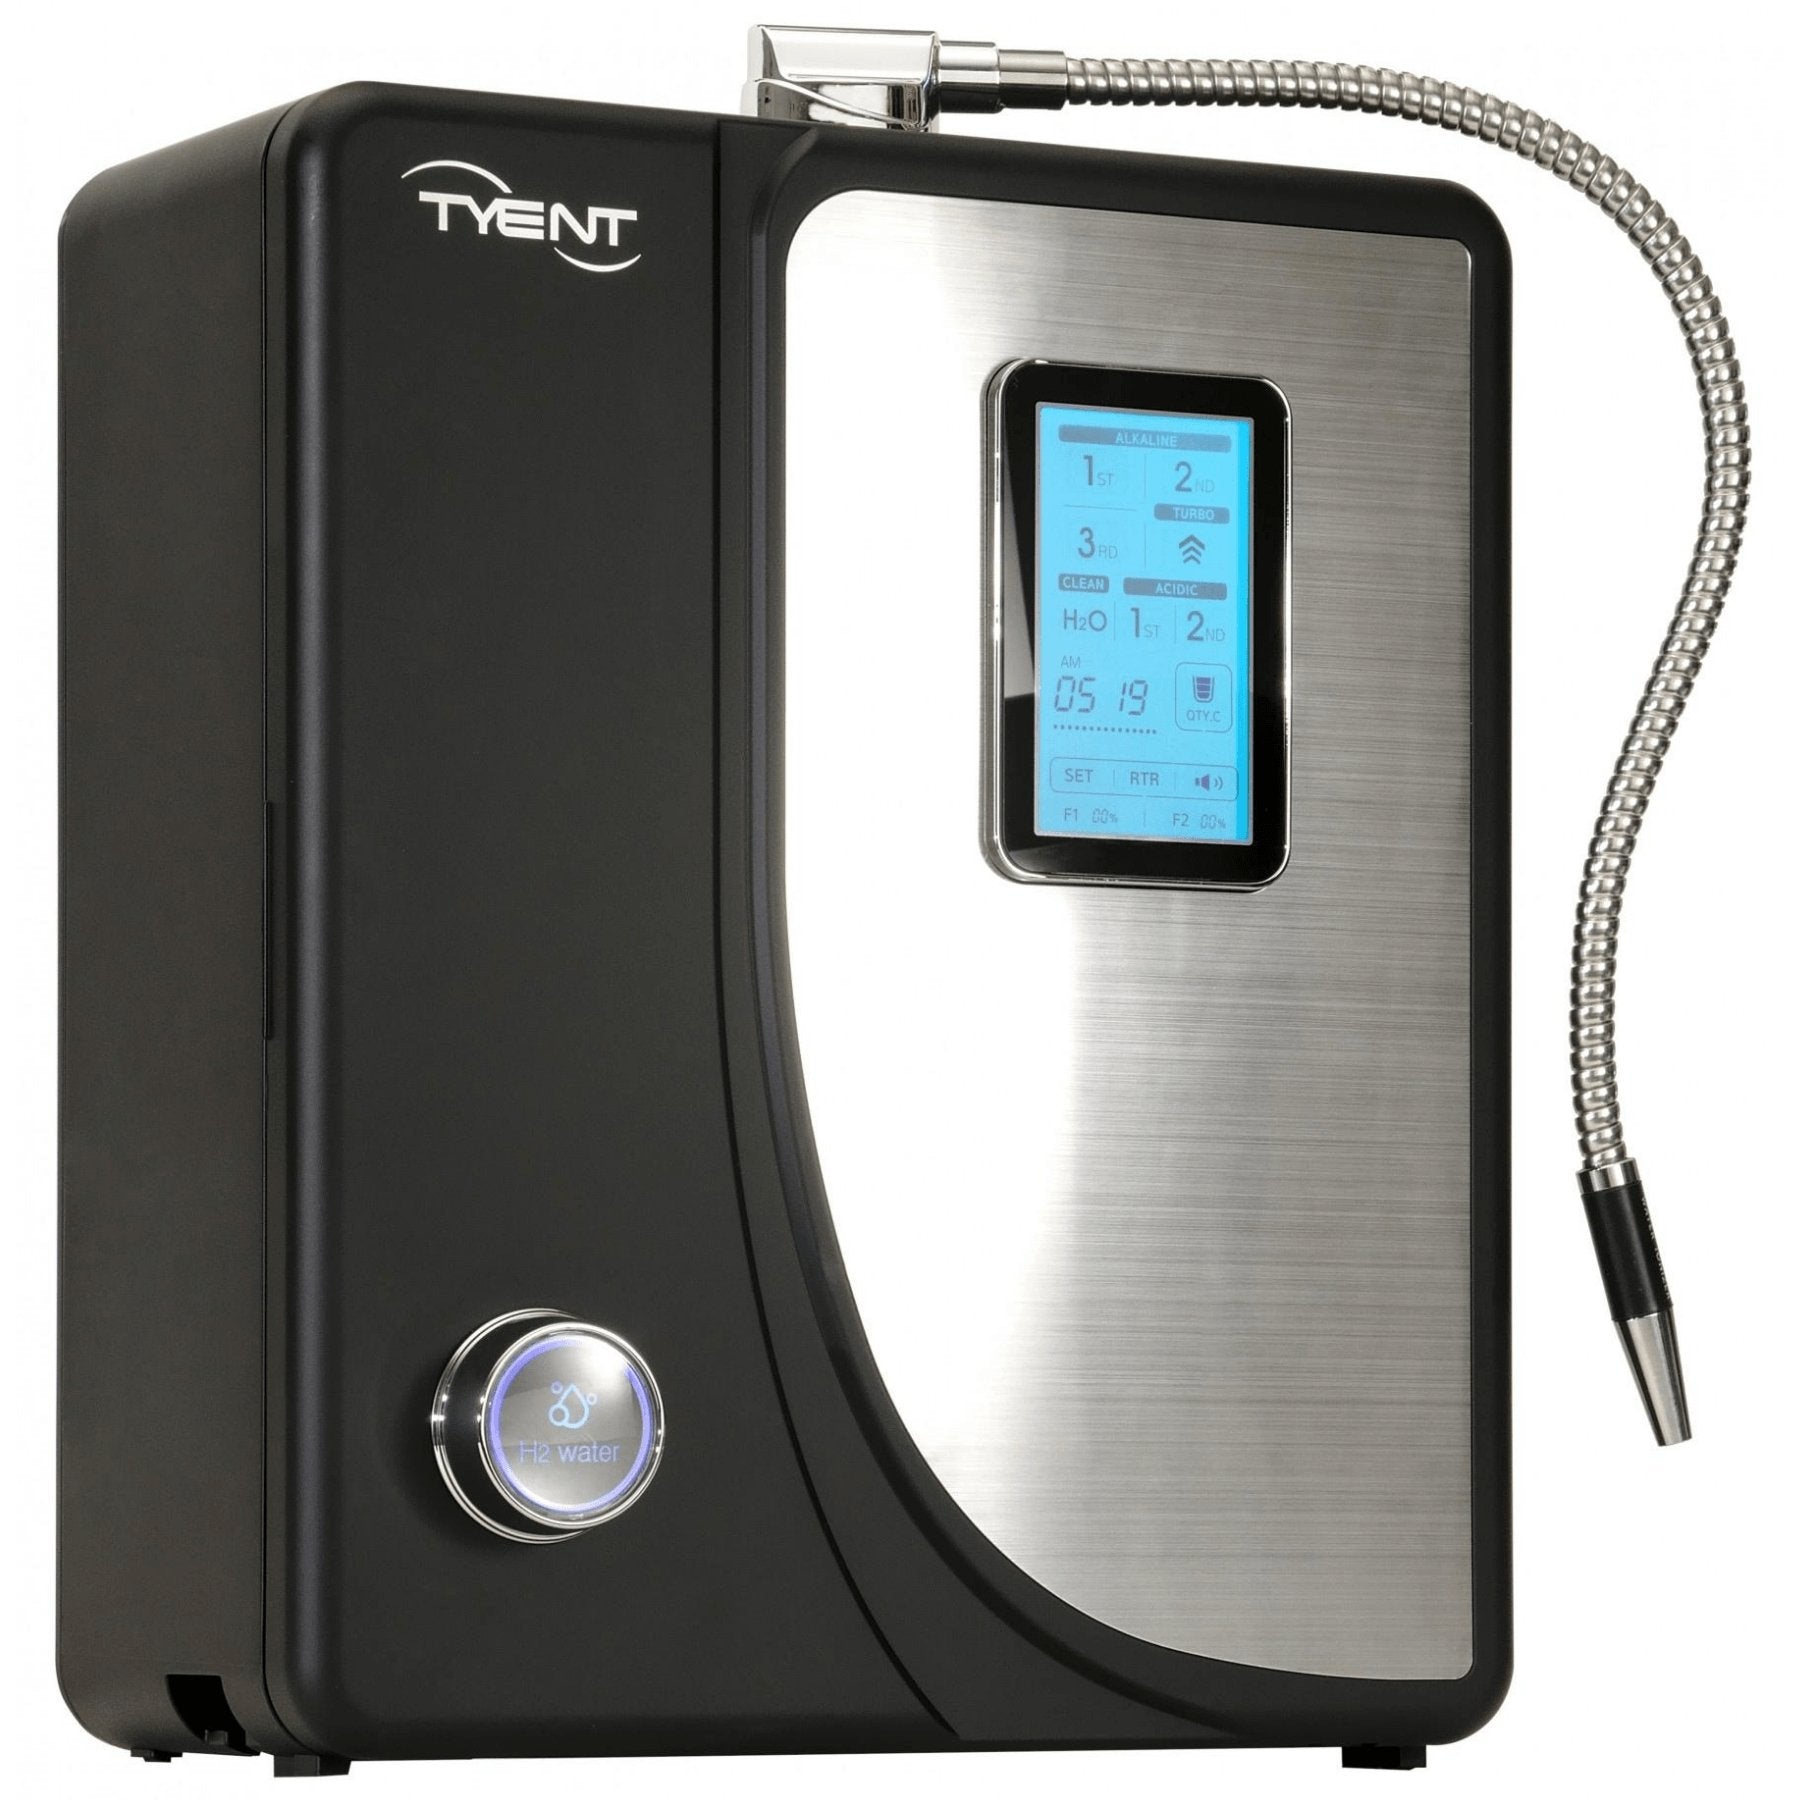 Tyent USA Water Alkaline Ionizer Machine